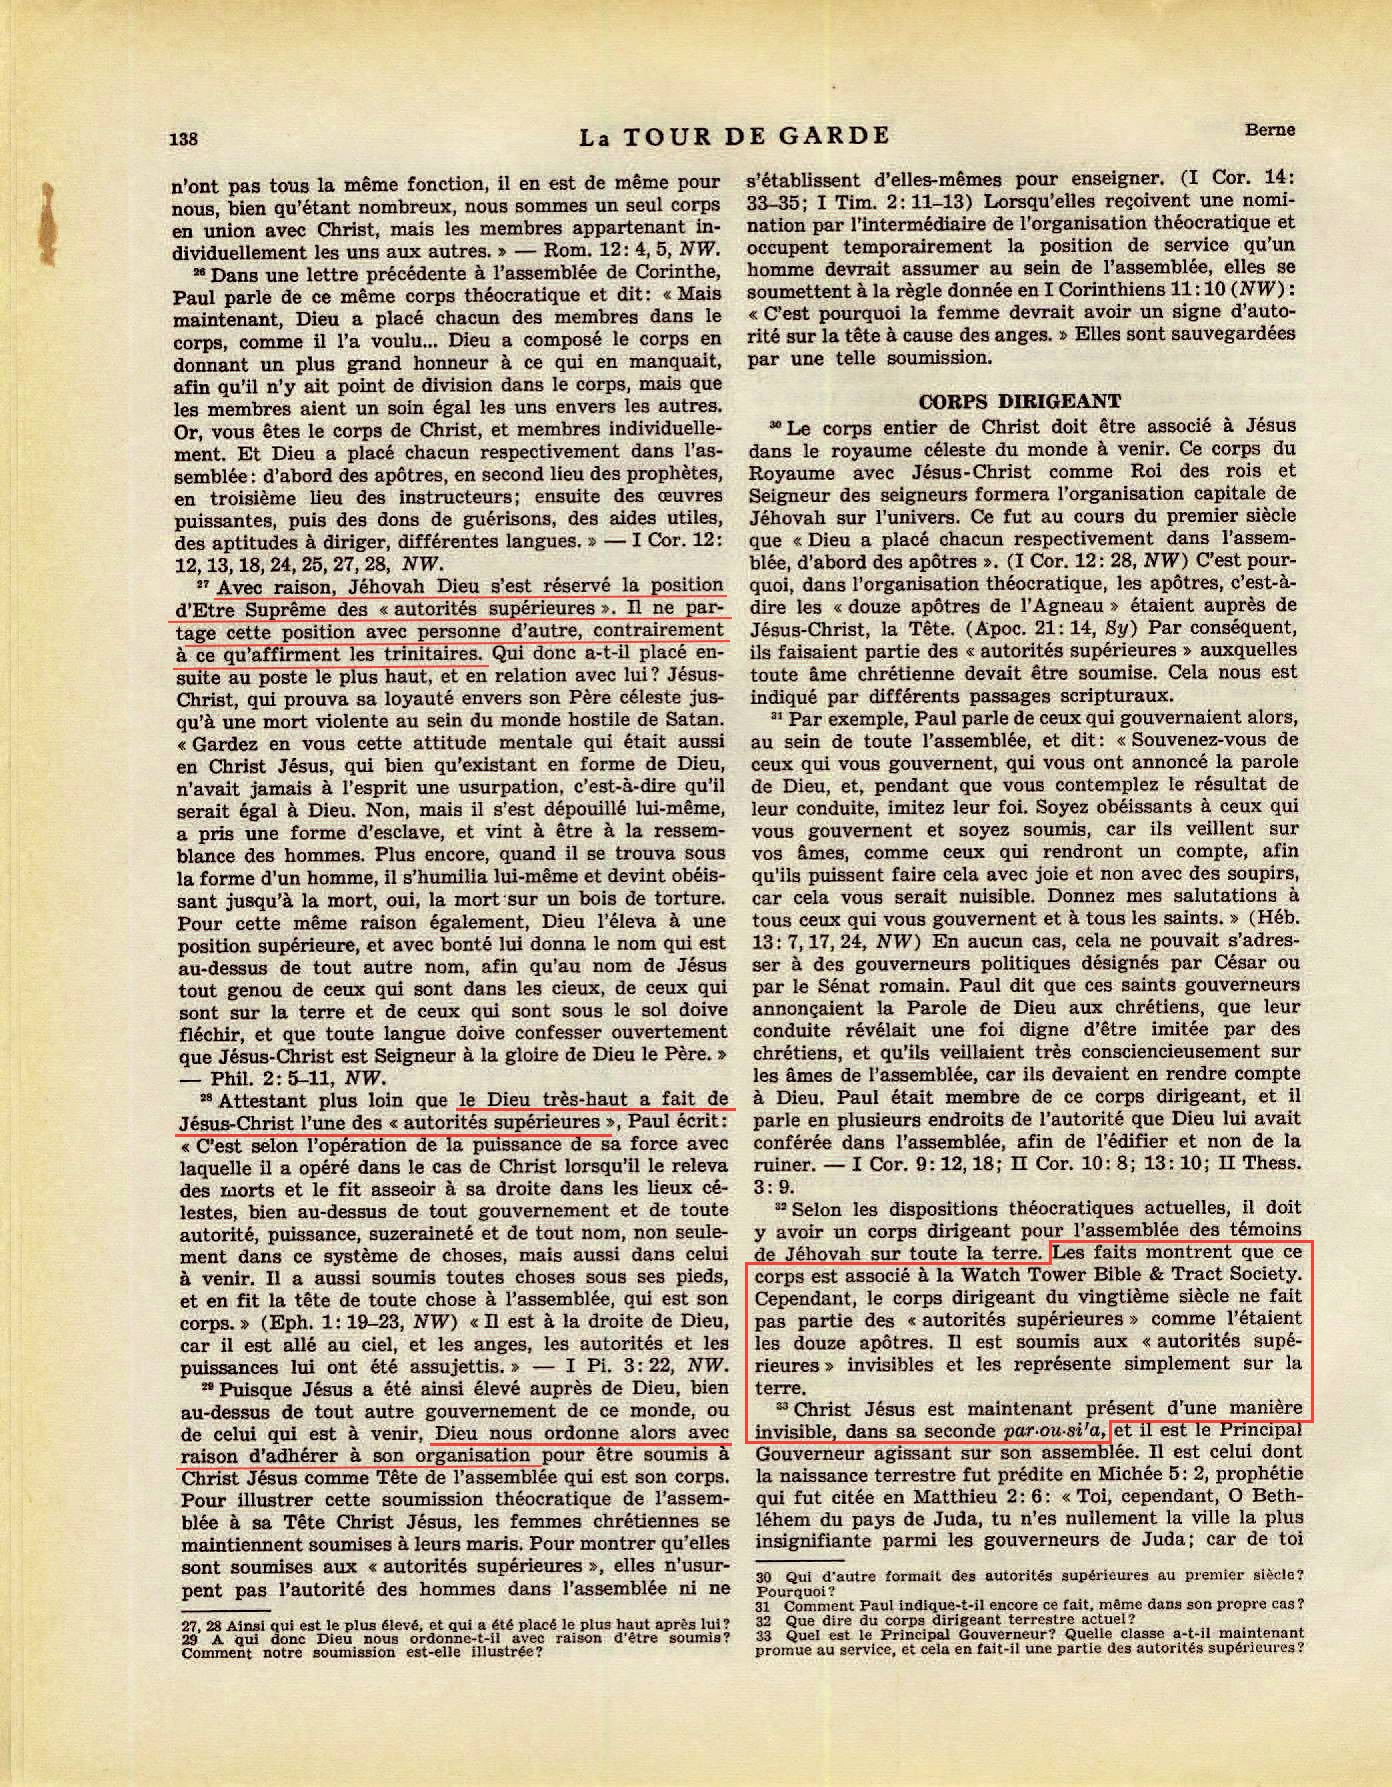 iLes autorités supérieures - Page 2 La-Tour-de-Garde-1-mai-1951-p138